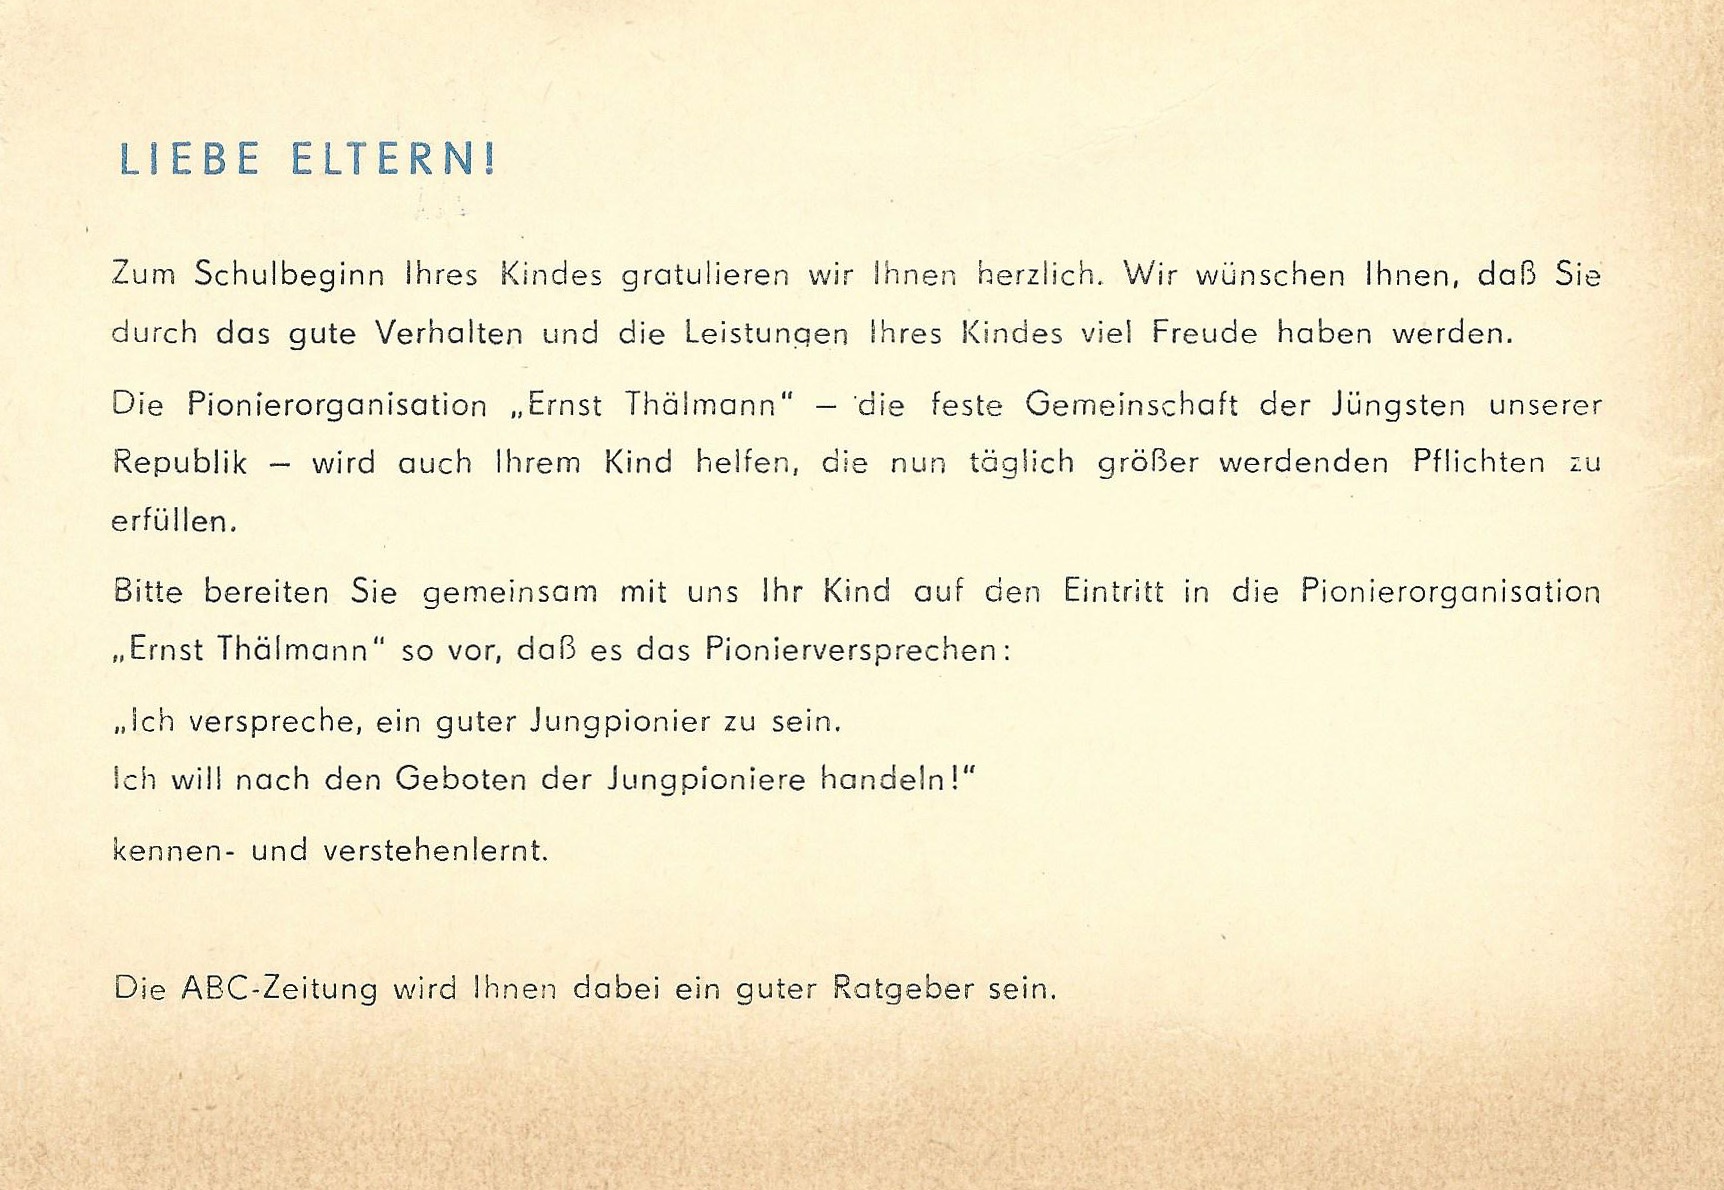 Aufnahmeantrag der Pionierorganisation "Ernst Thälmann" für Nick Bialowons, 4. November 1979 (Museum Wolmirstedt RR-F)